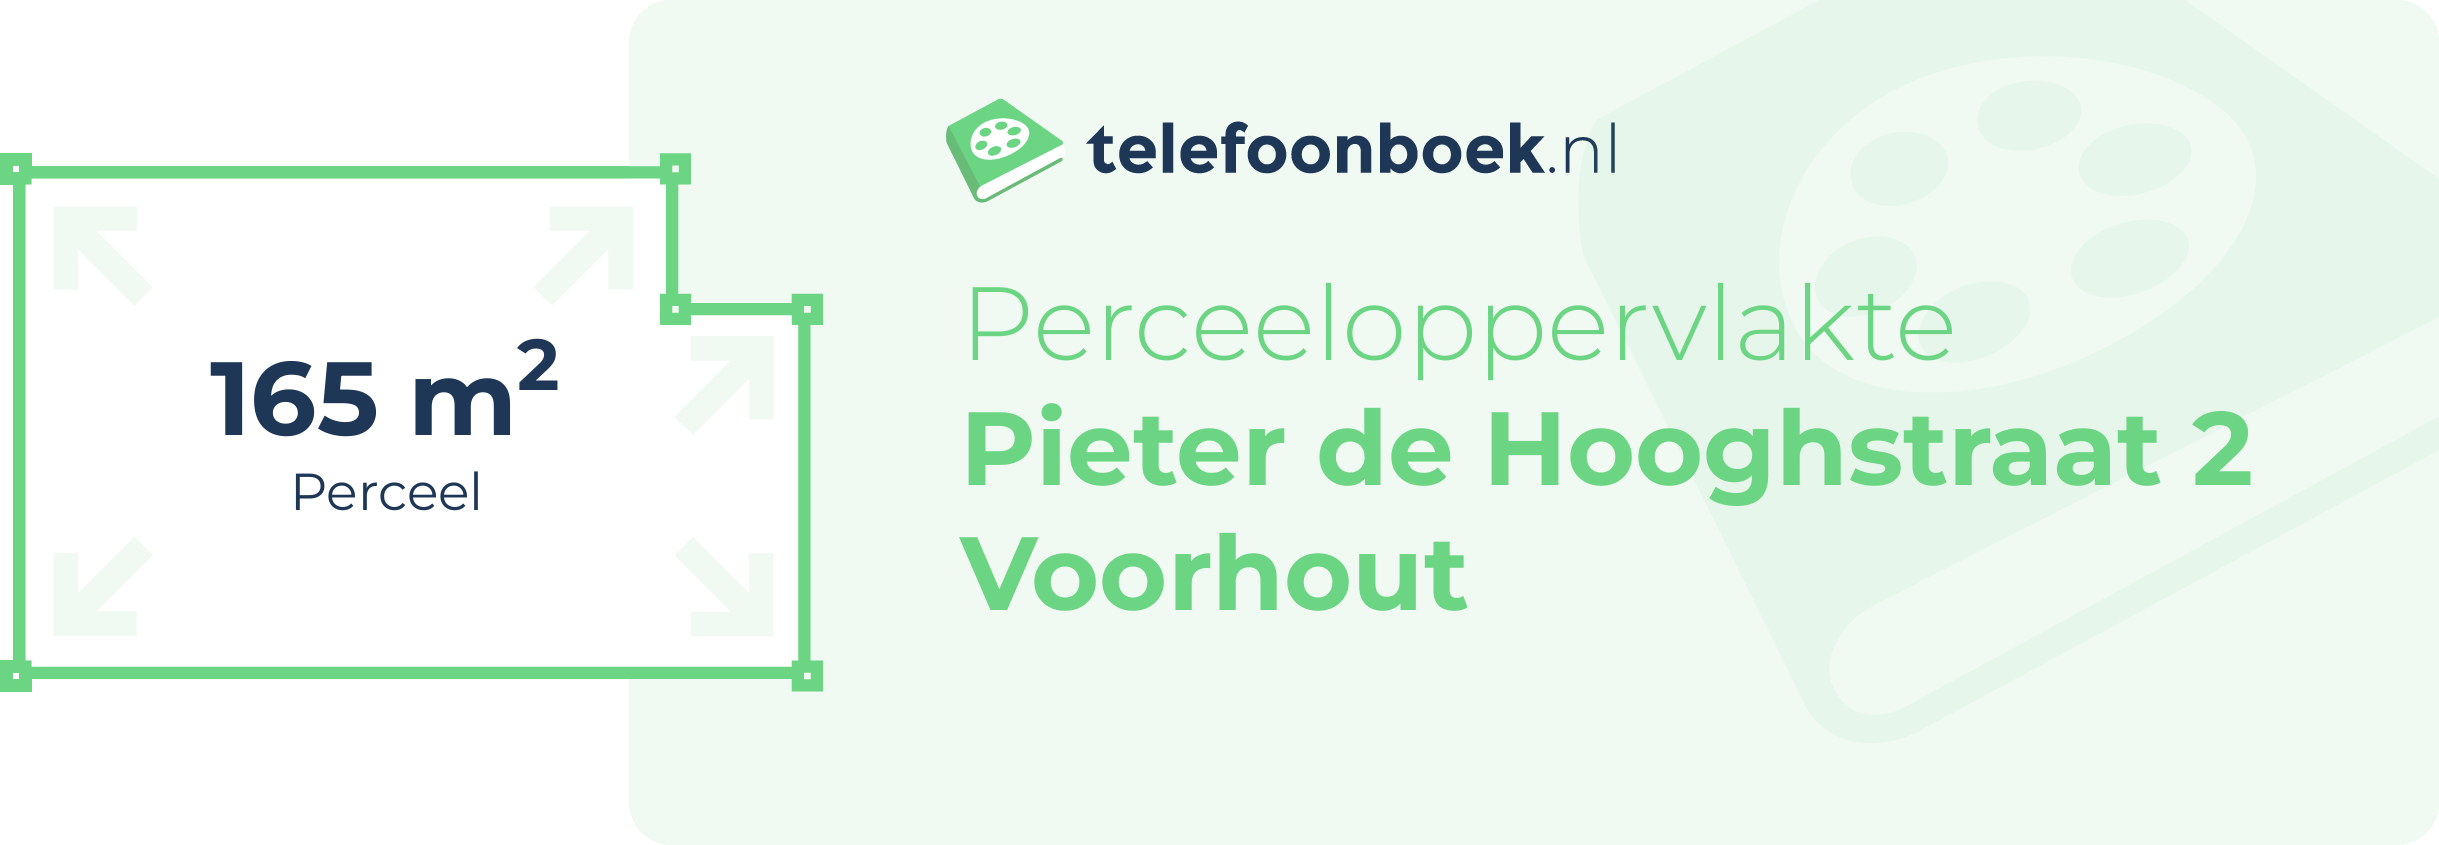 Perceeloppervlakte Pieter De Hooghstraat 2 Voorhout